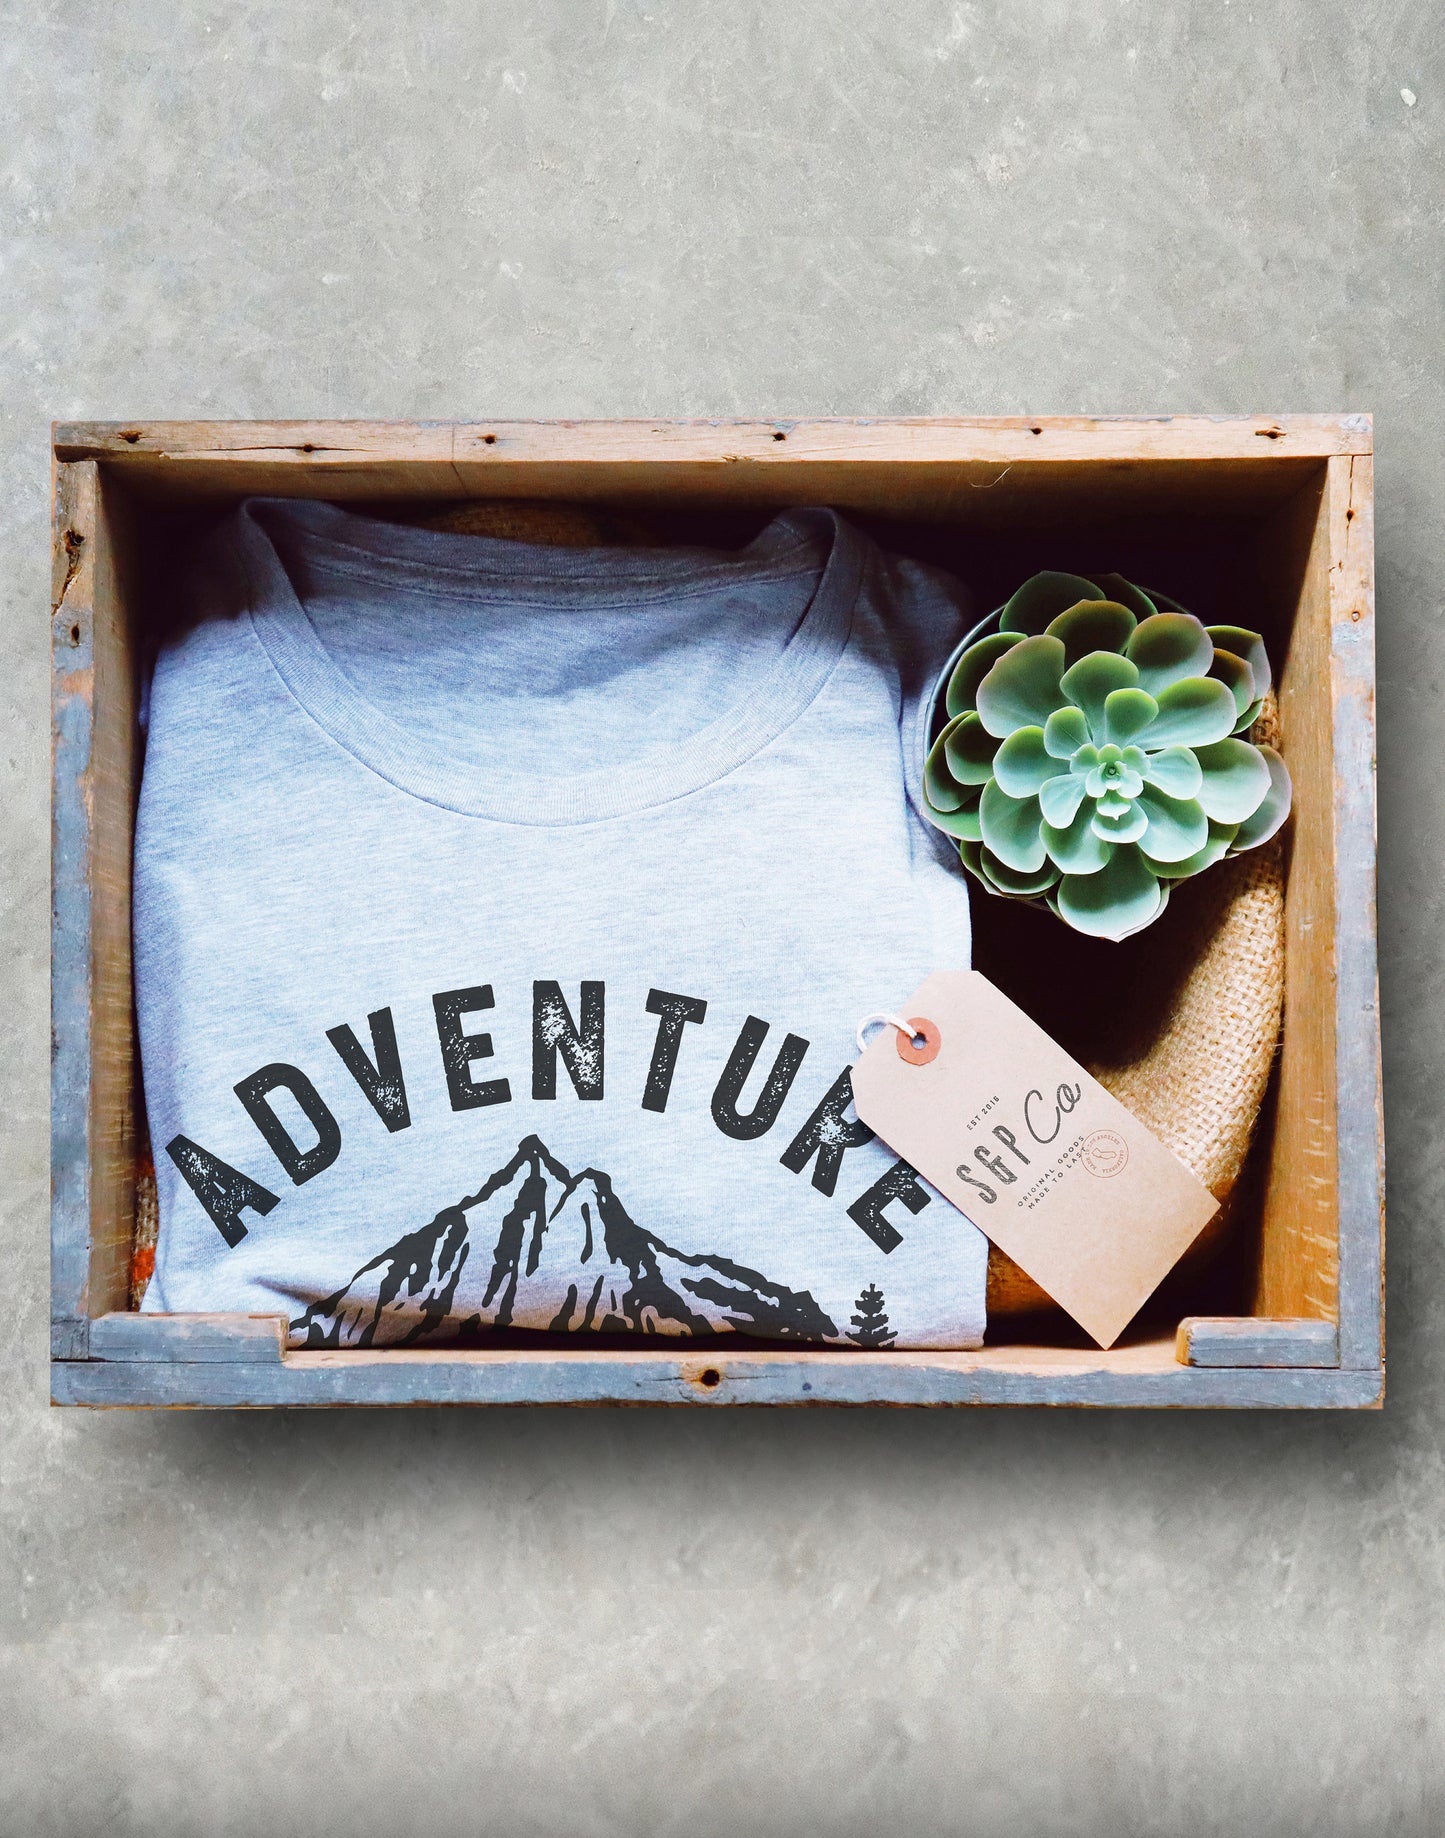 Adventure Calls Unisex Shirt